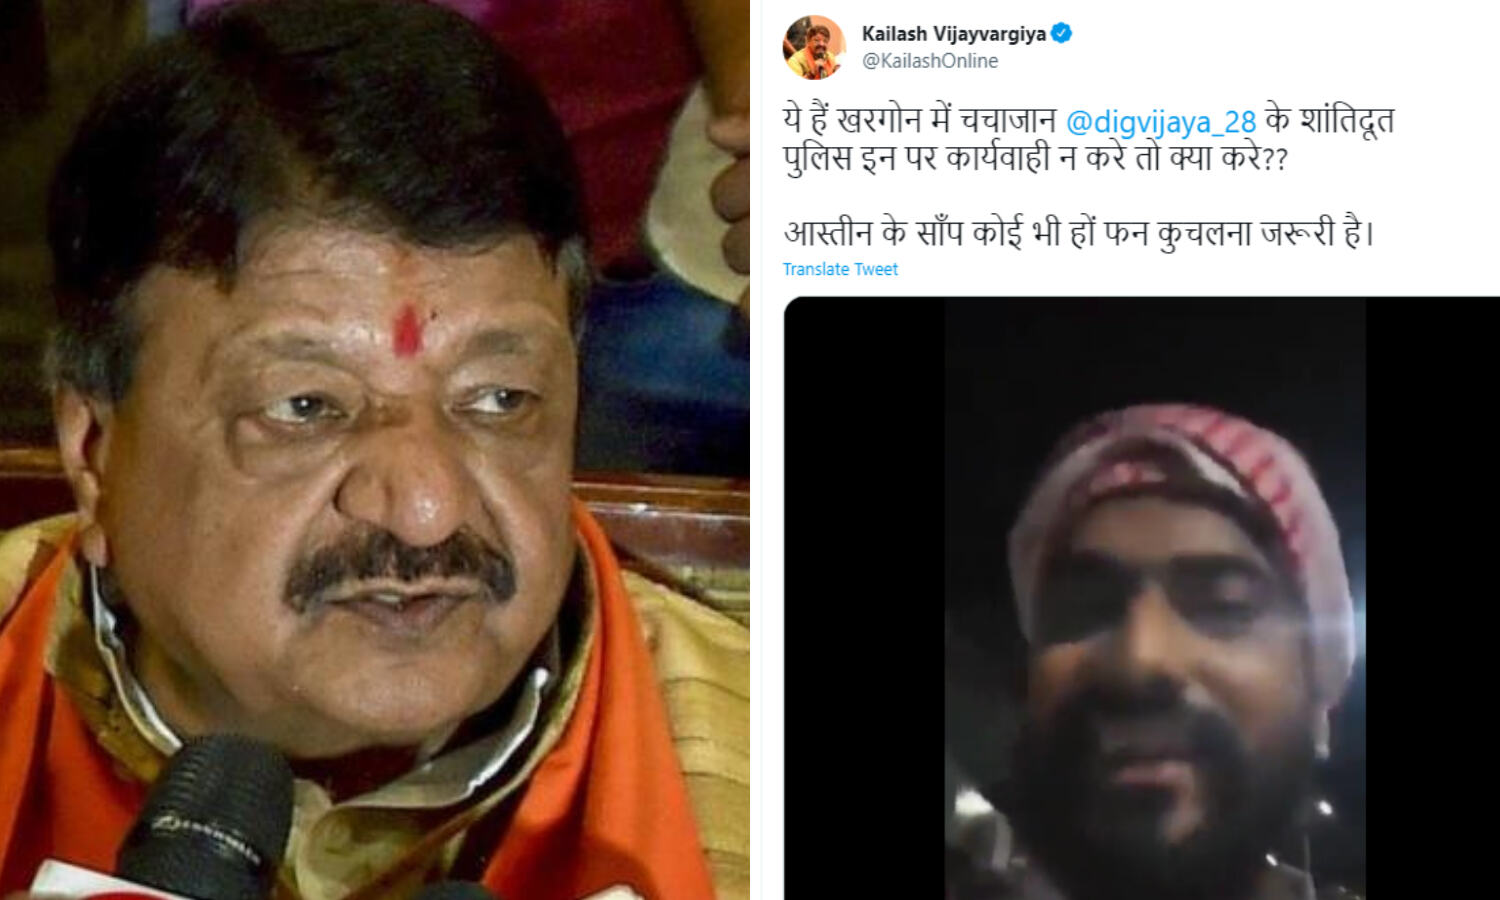 Kailash Vijayvargiya ने तेलंगाना के वीडियो को खरगोन का बताकर किया ट्वीट, कांग्रेस ने की केस दर्ज करने की मांग